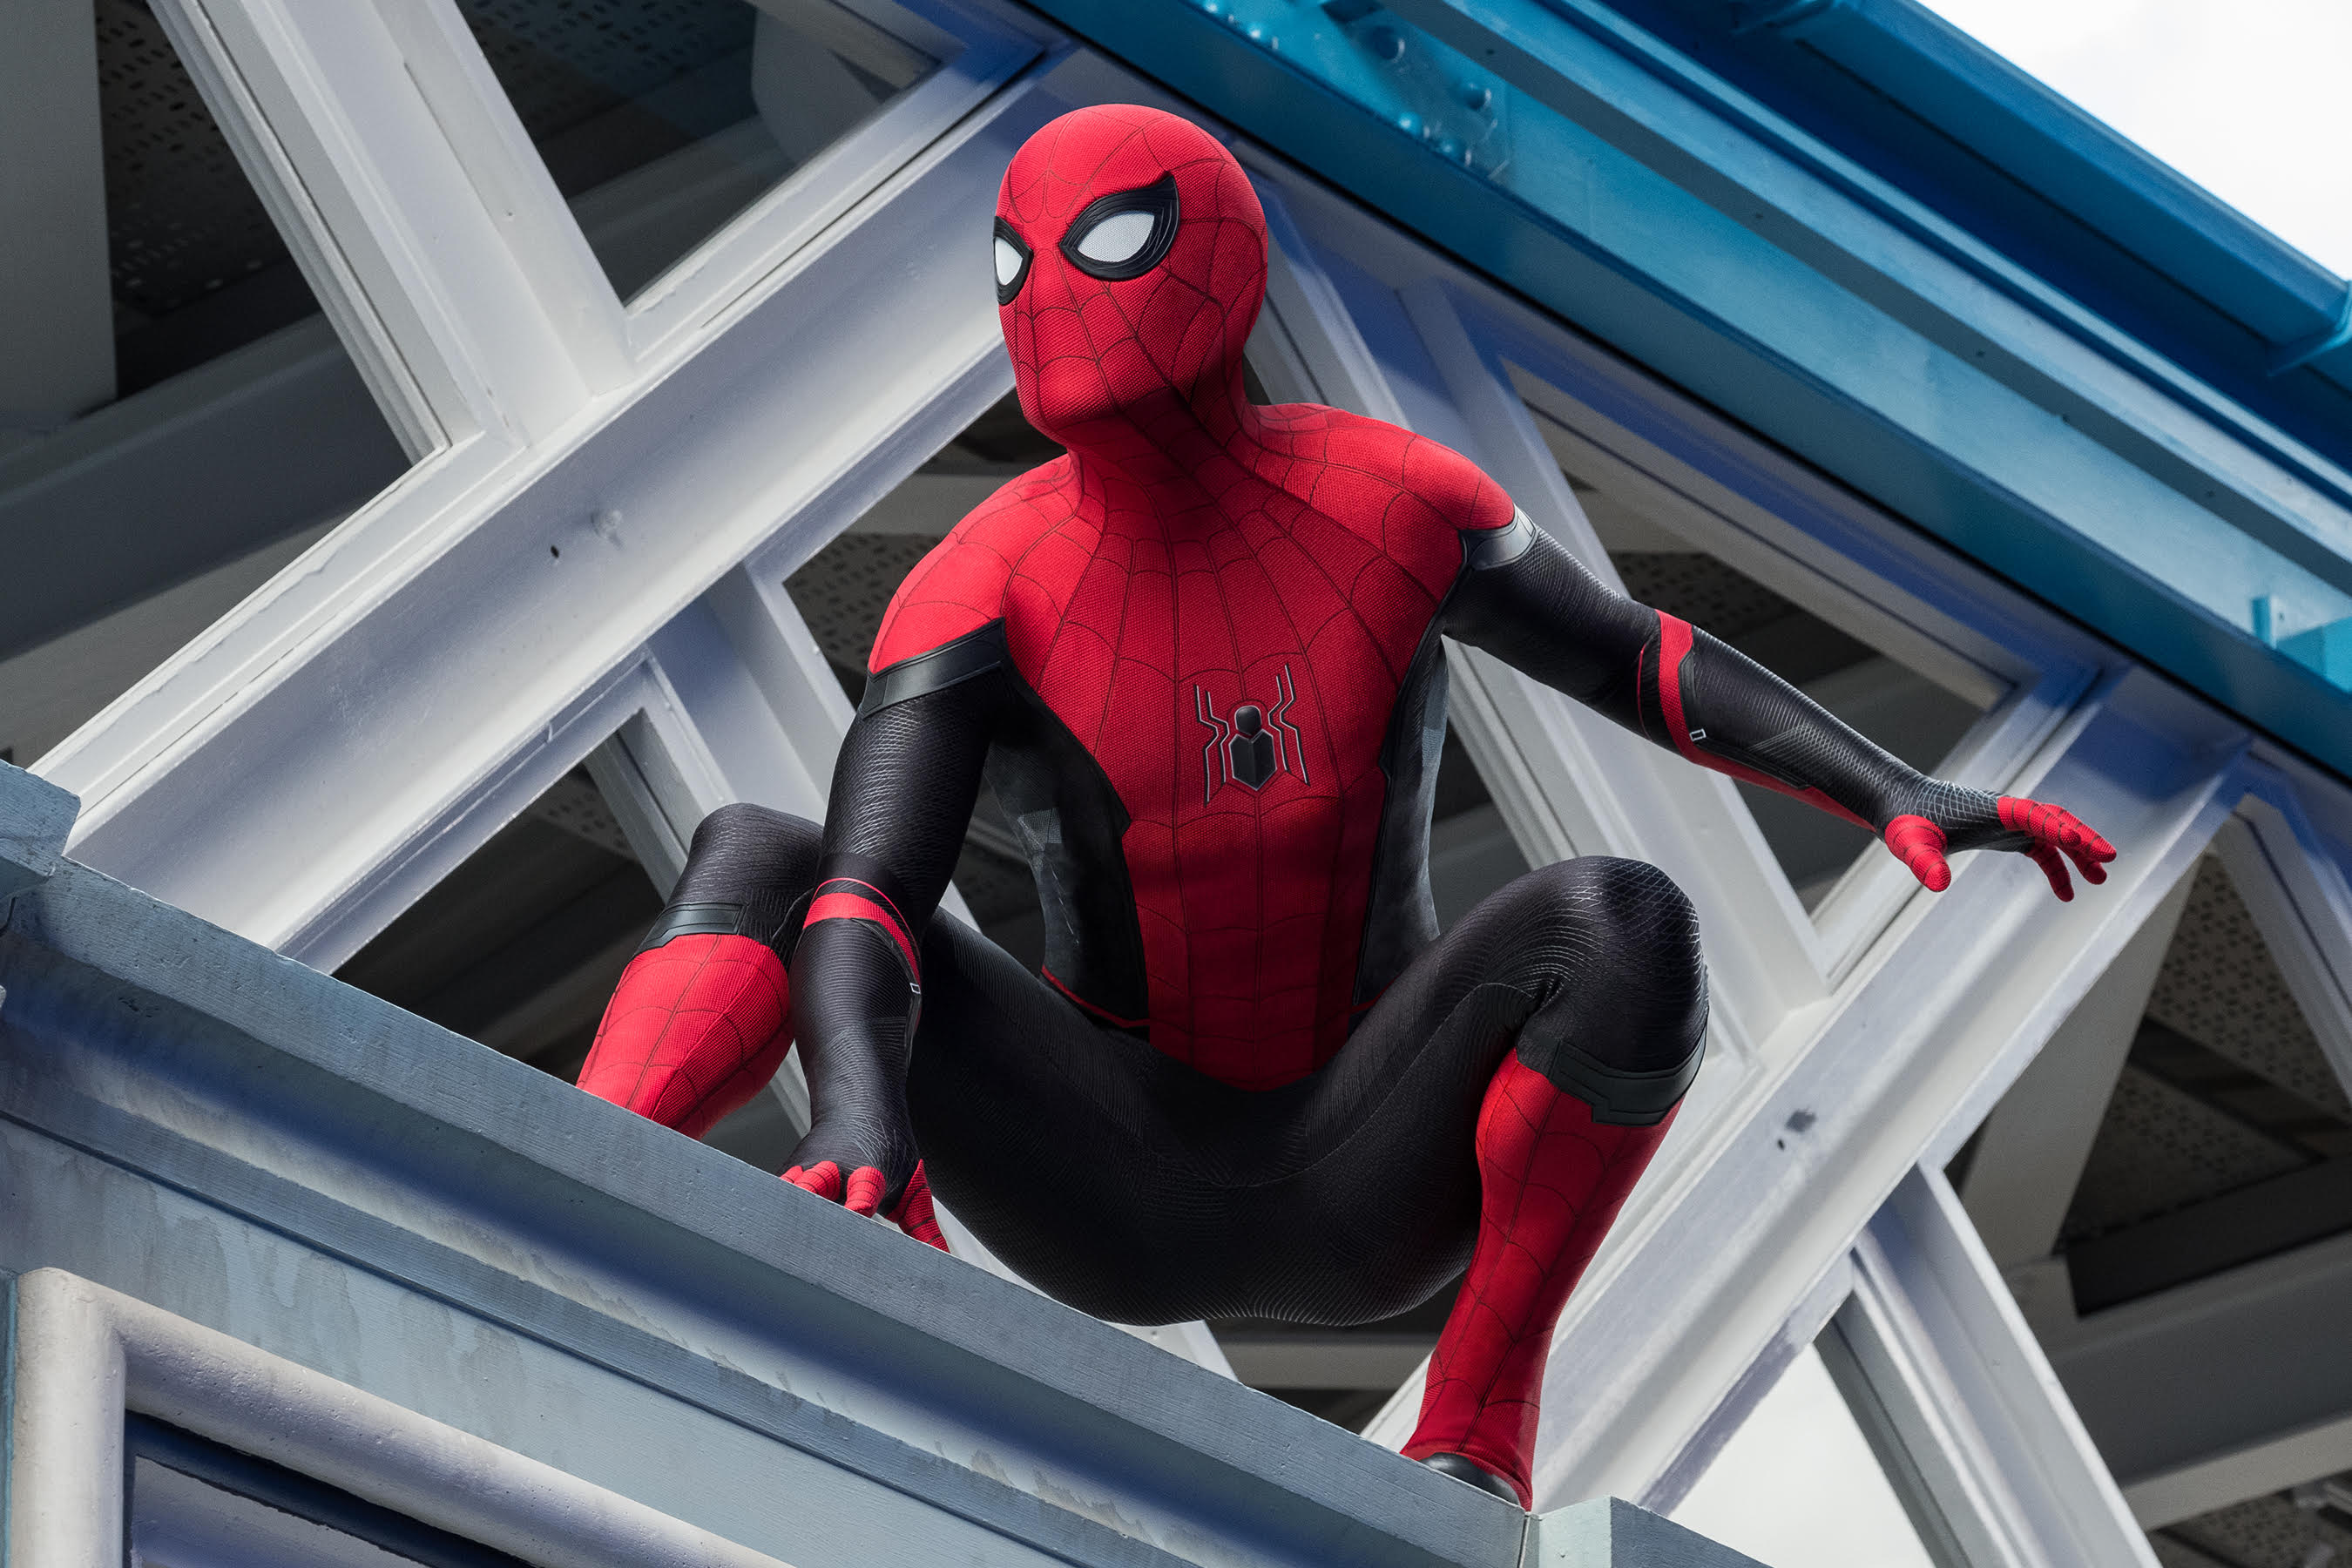 Disney-Sony Are Scheduled to Meet Next Week Regarding Spider-Man’s Future